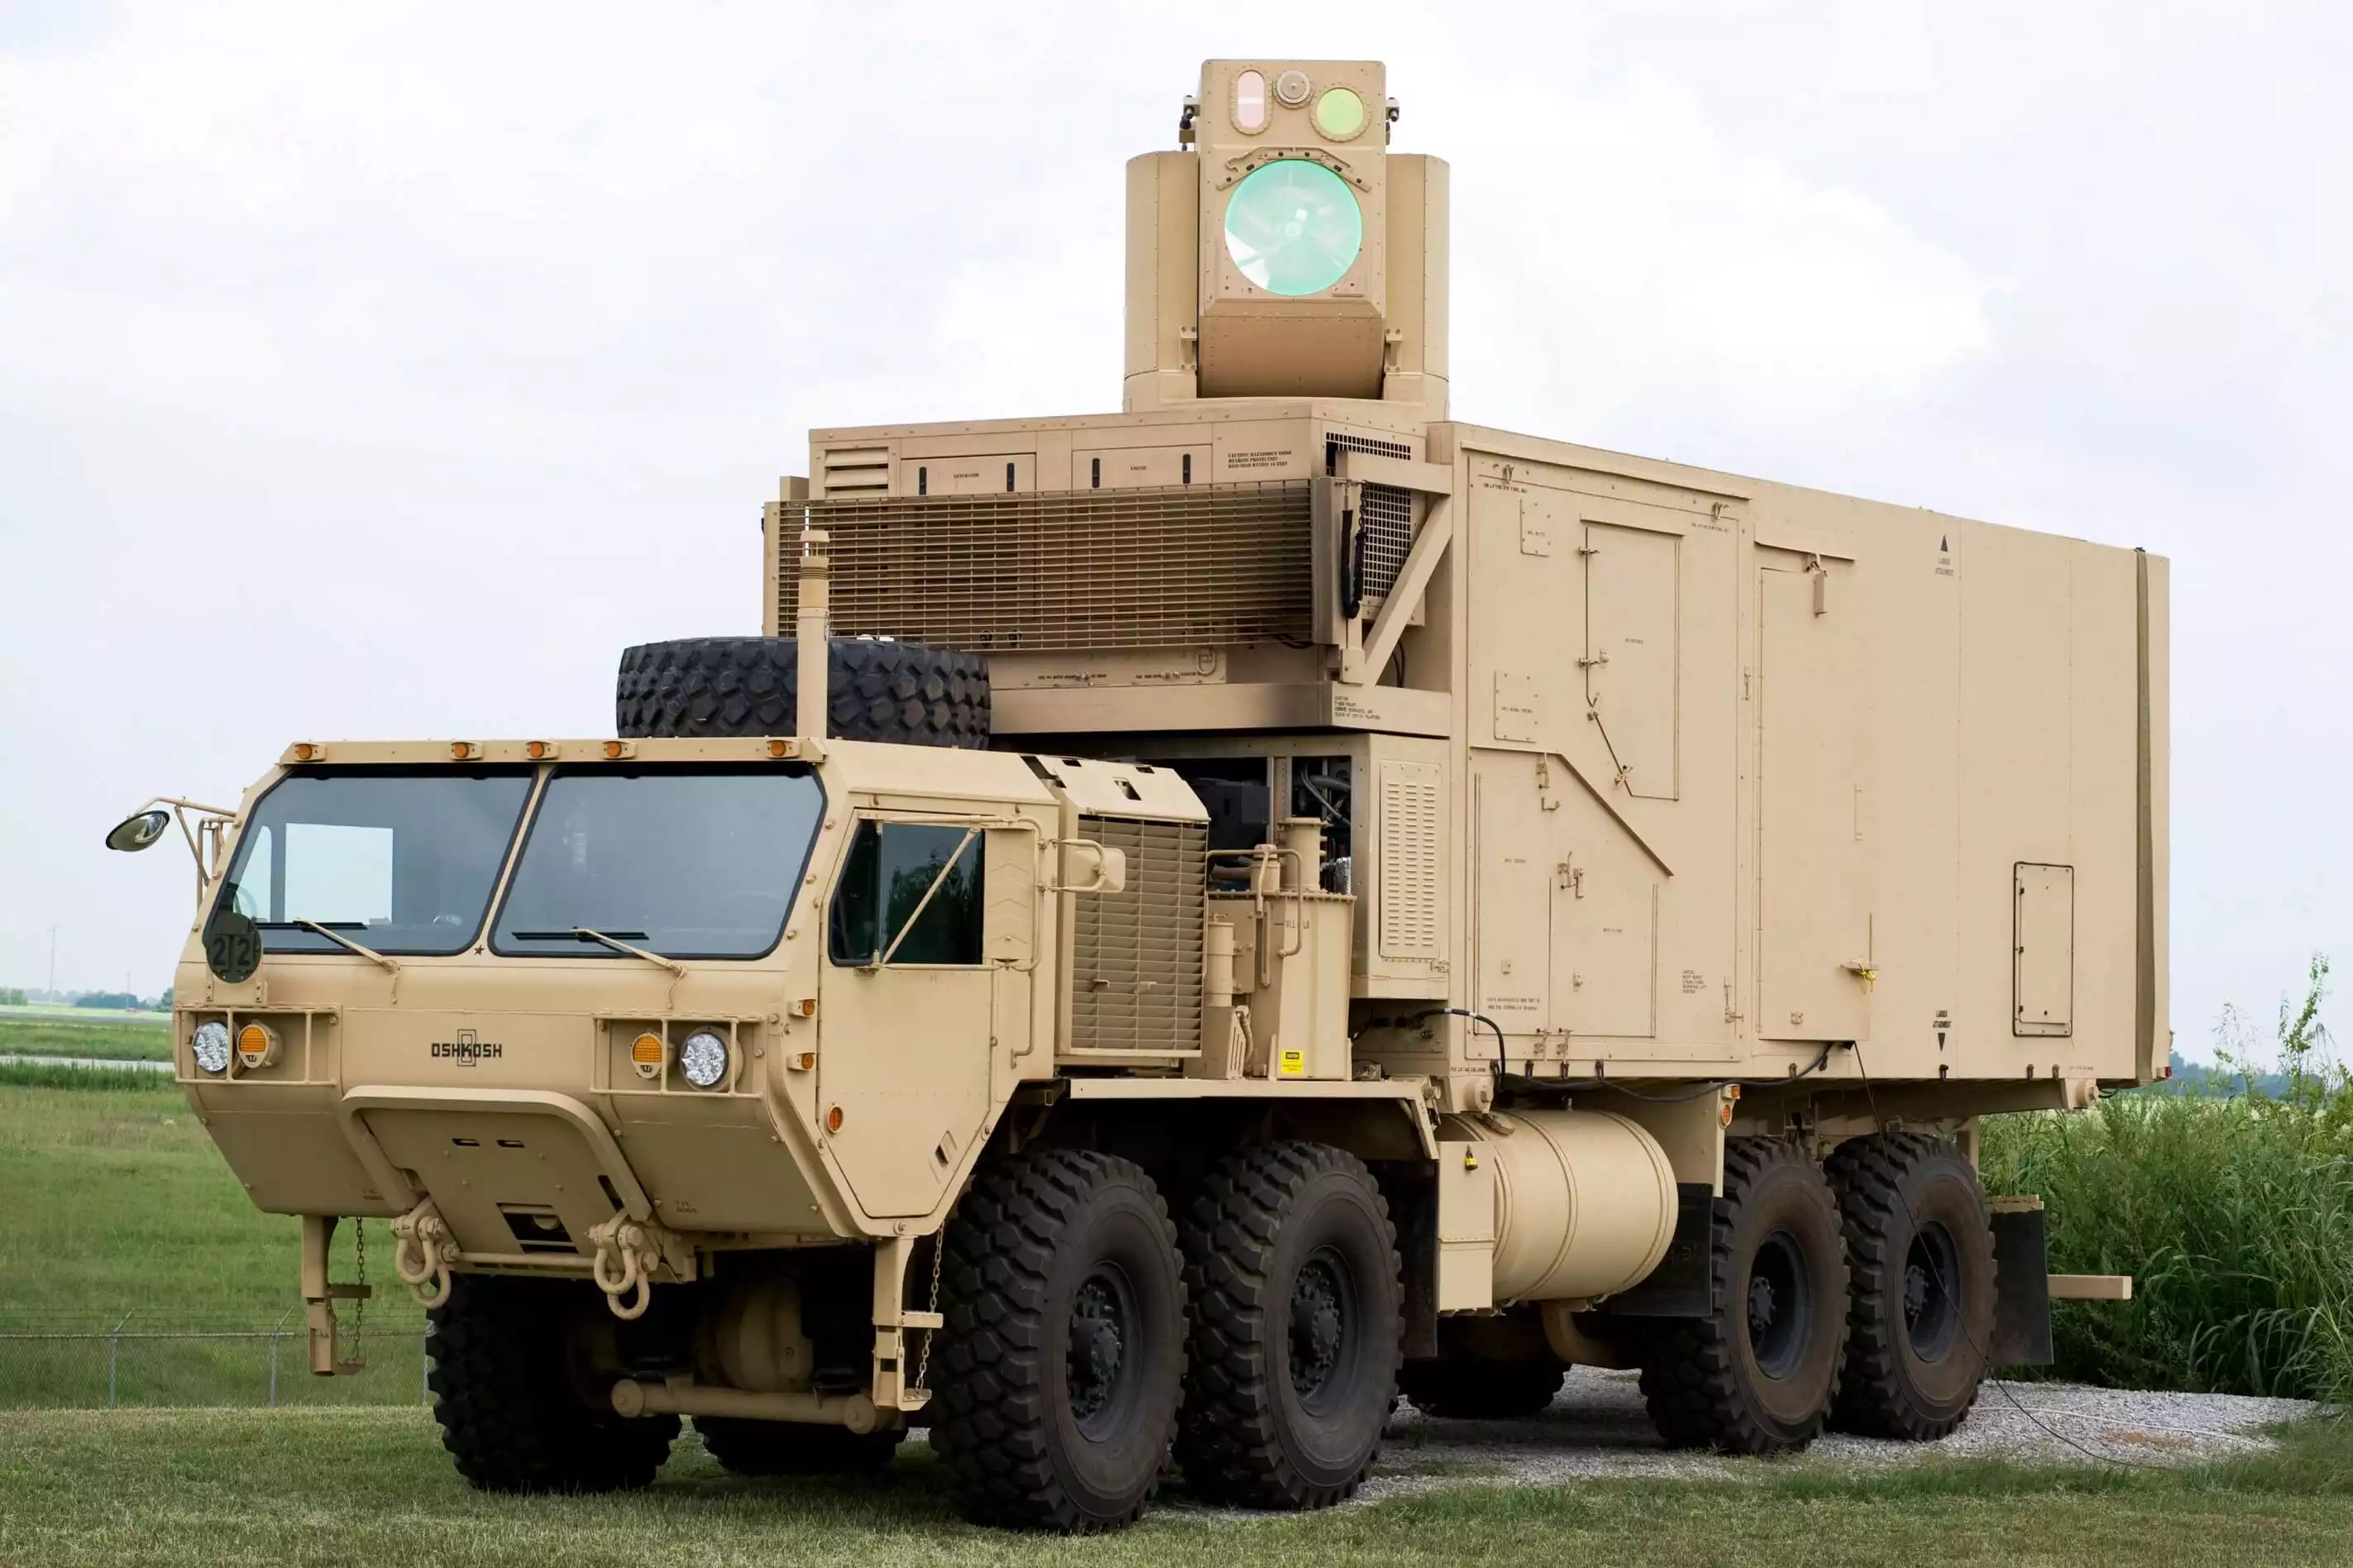 Représentation du Valkyrie, un camion de transport lourd équipé d'un laser antiaérien, anti-missile et C-RAM.